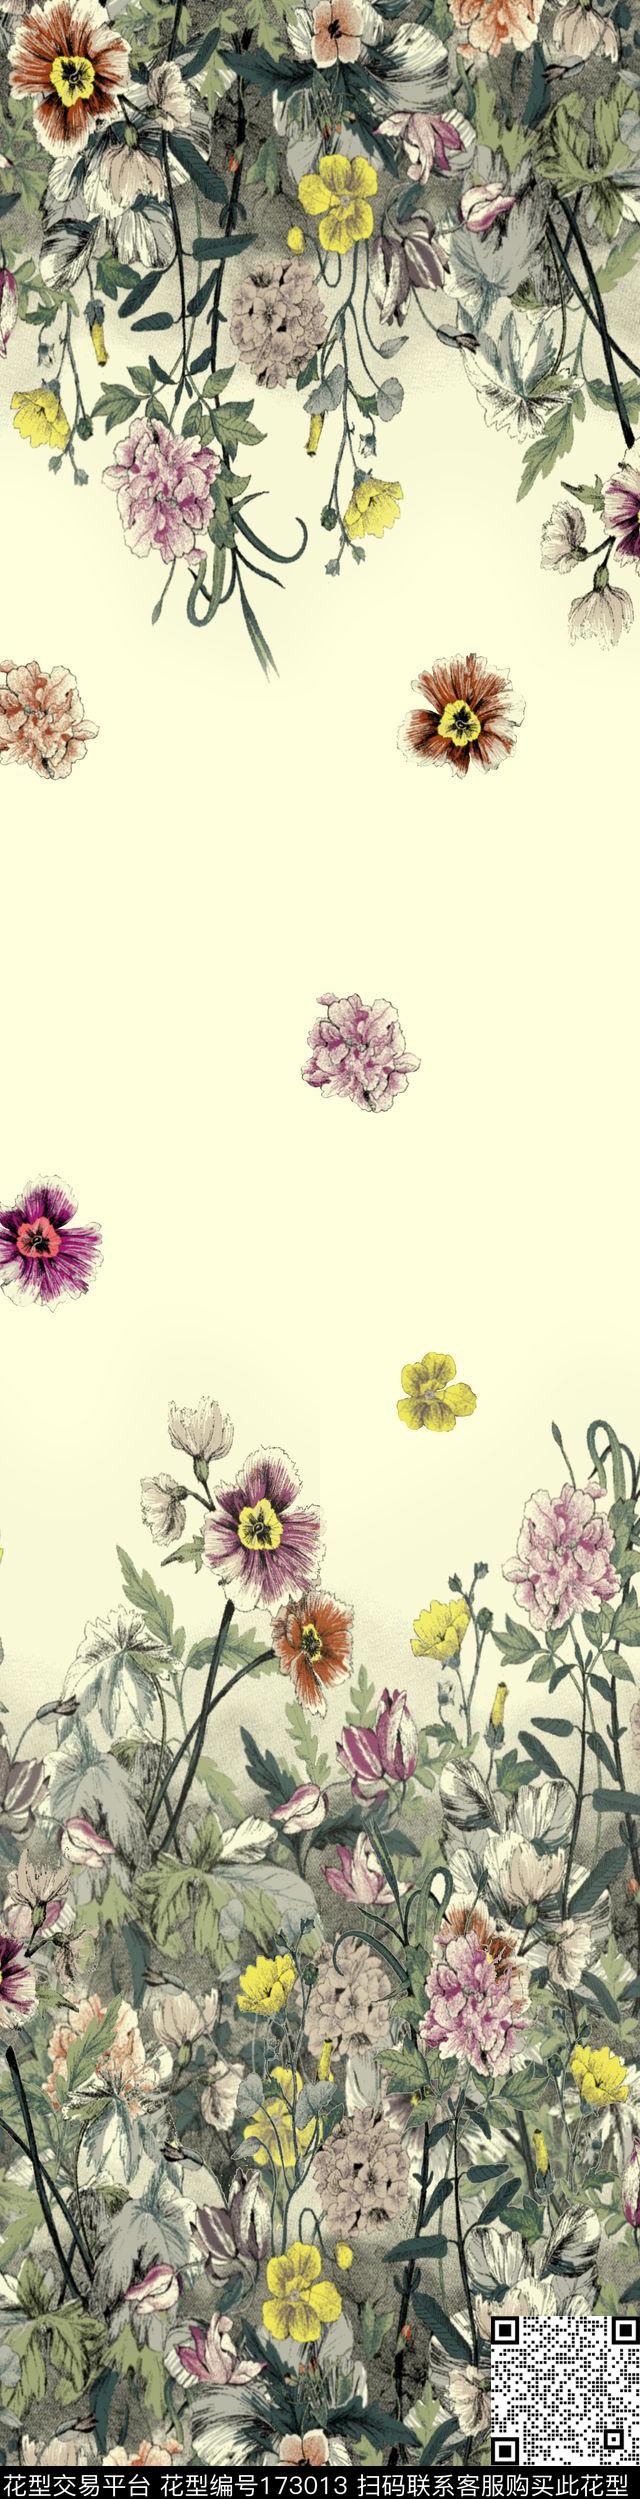 写实 - 173013 - 手绘花卉 花丛 绘画 - 传统印花花型 － 床品花型设计 － 瓦栏